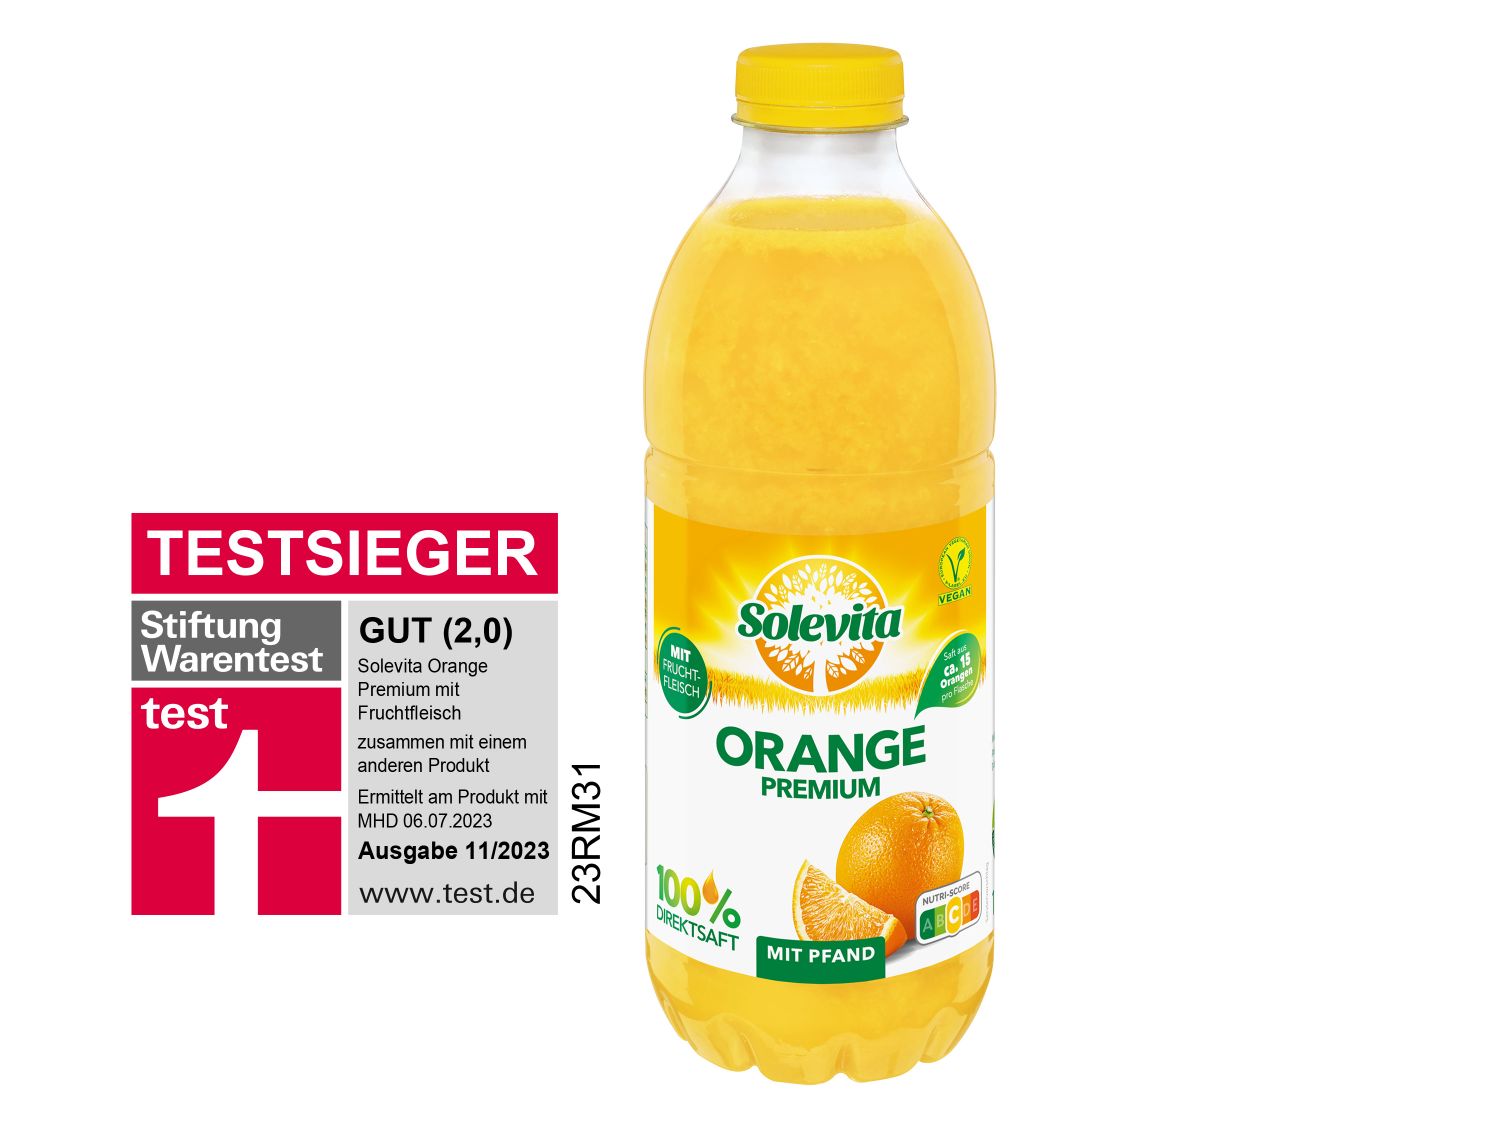 Solevita Orange Lidl Premium - mit Fruchtfleisch